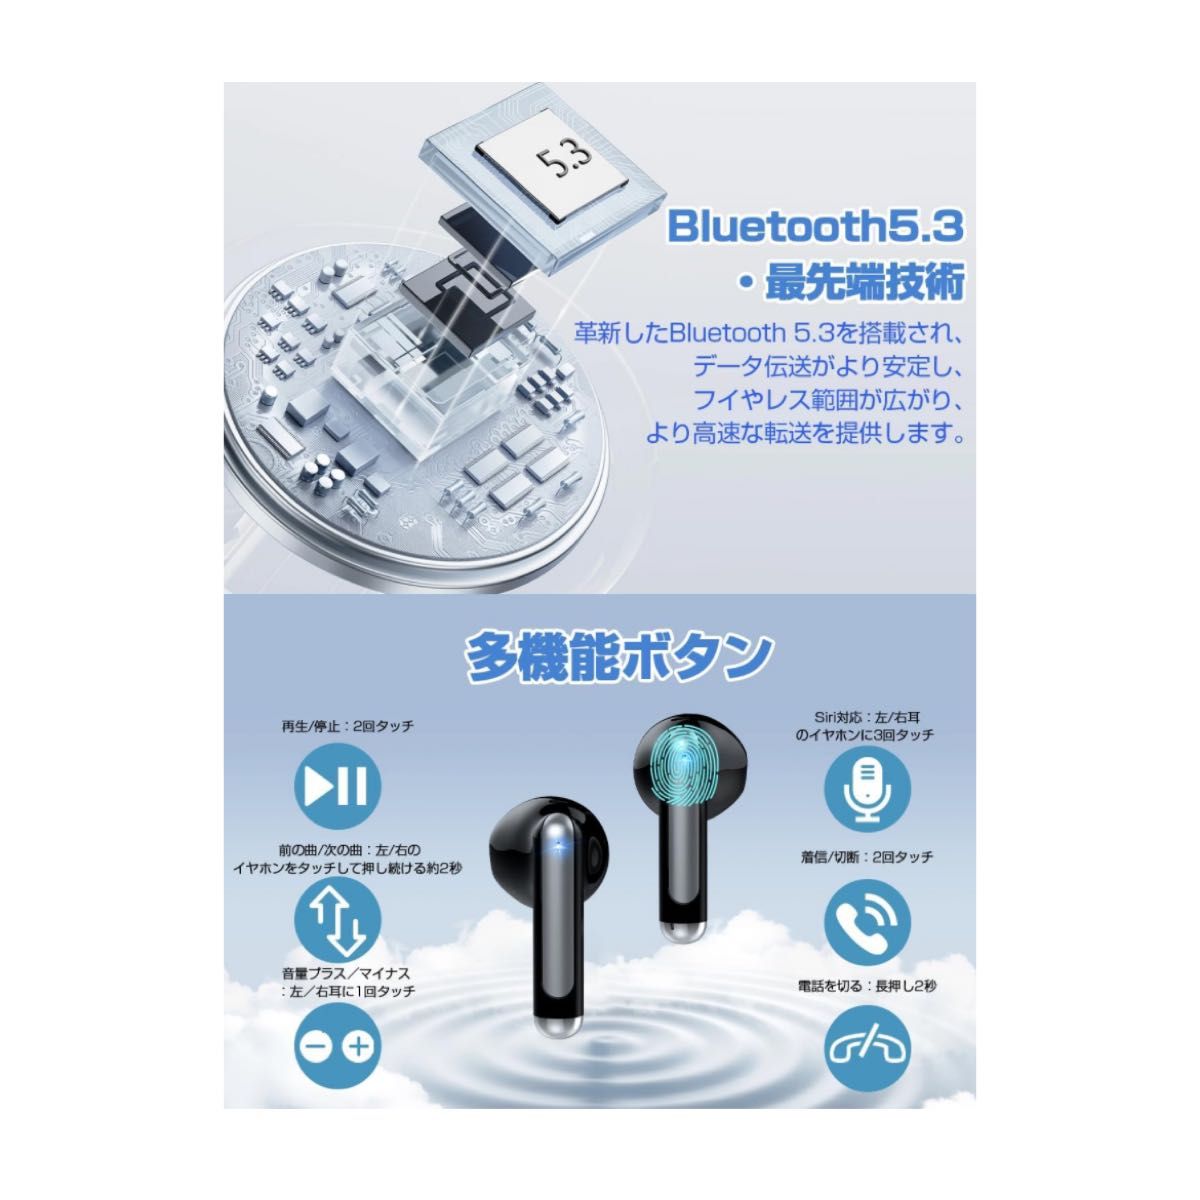 【新品】ワイヤレスイヤホン イヤホン ワイヤレス Bluetooth 5.3 Black 黒